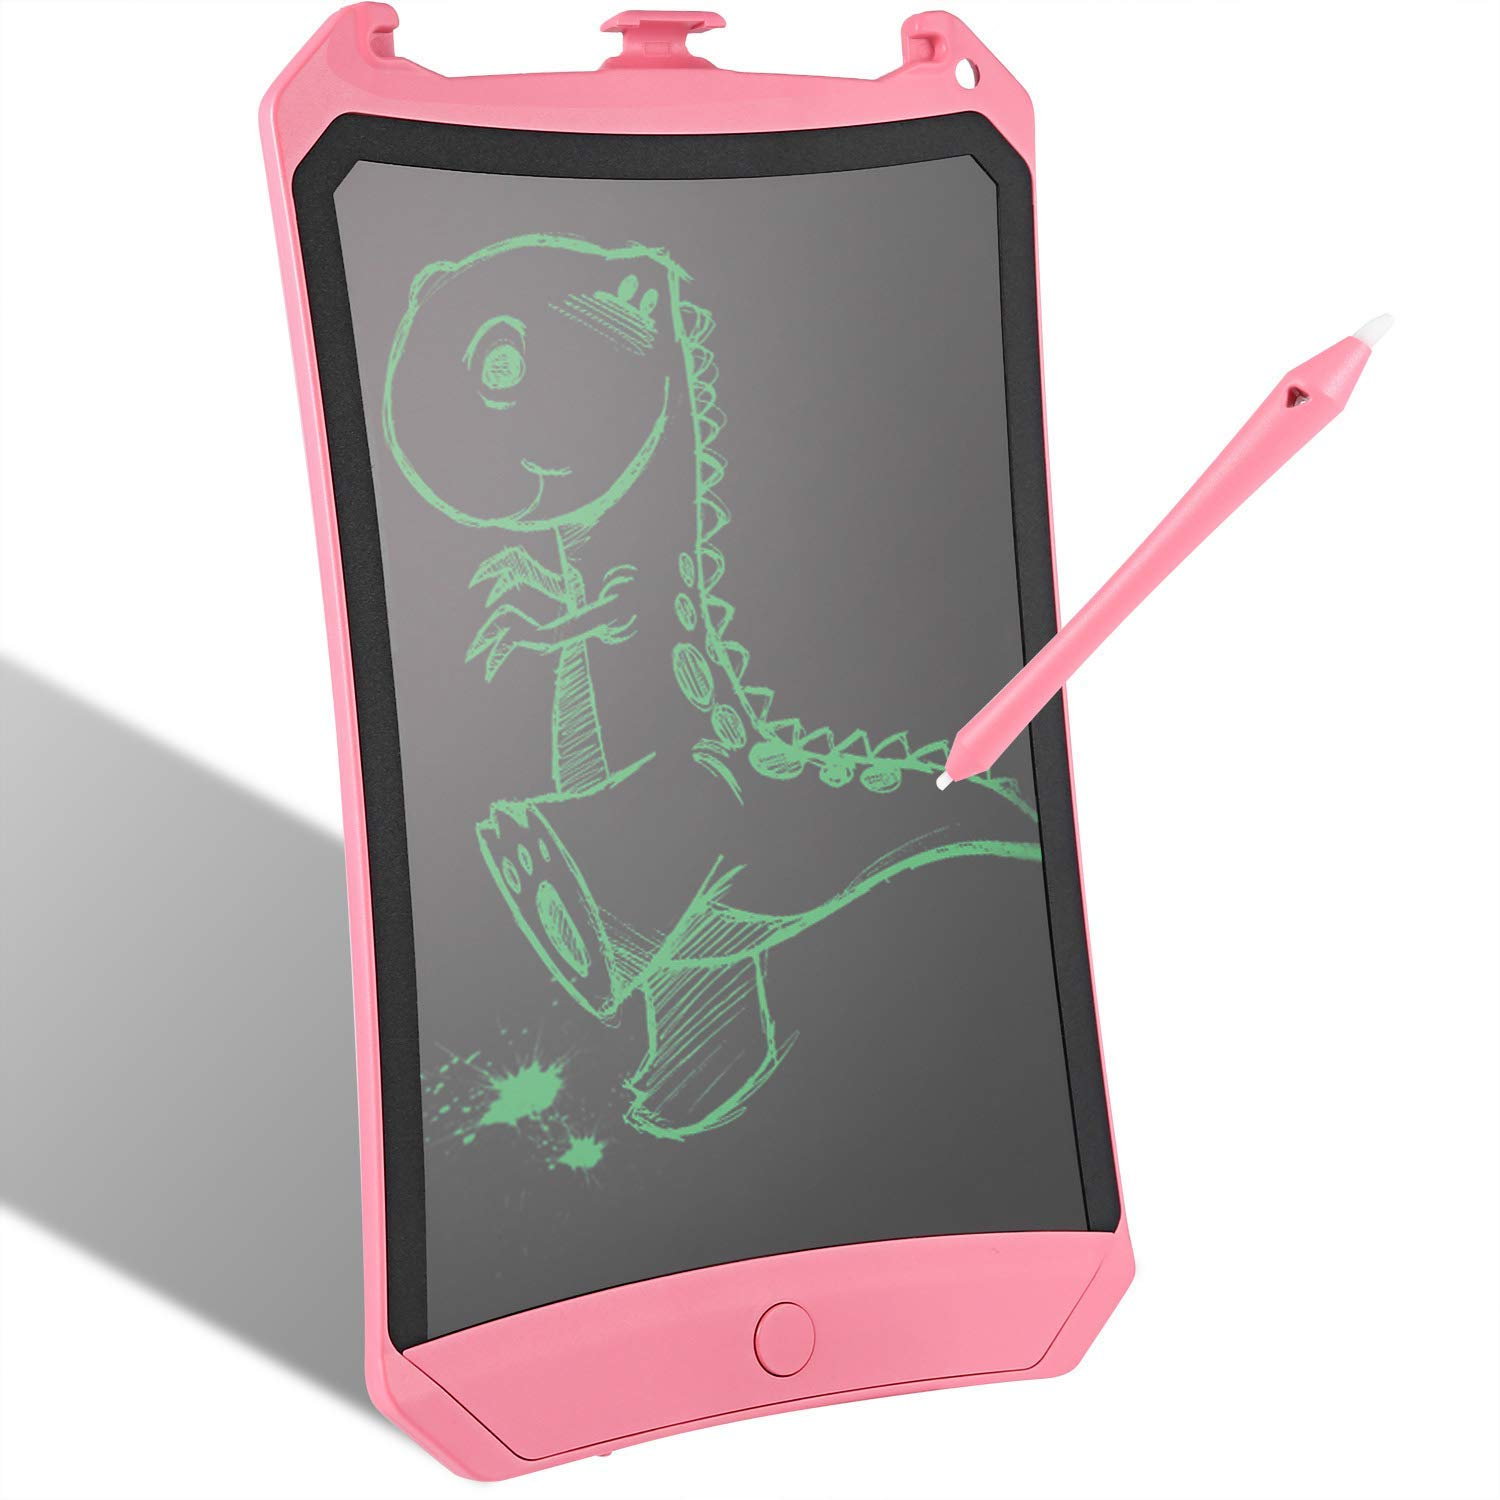 Tablets de Escritura LCD Tableta de Diujo Gráfica eWriters Tablero de Mensaje para Niños Adulto Oficina Escuela (Rosa)